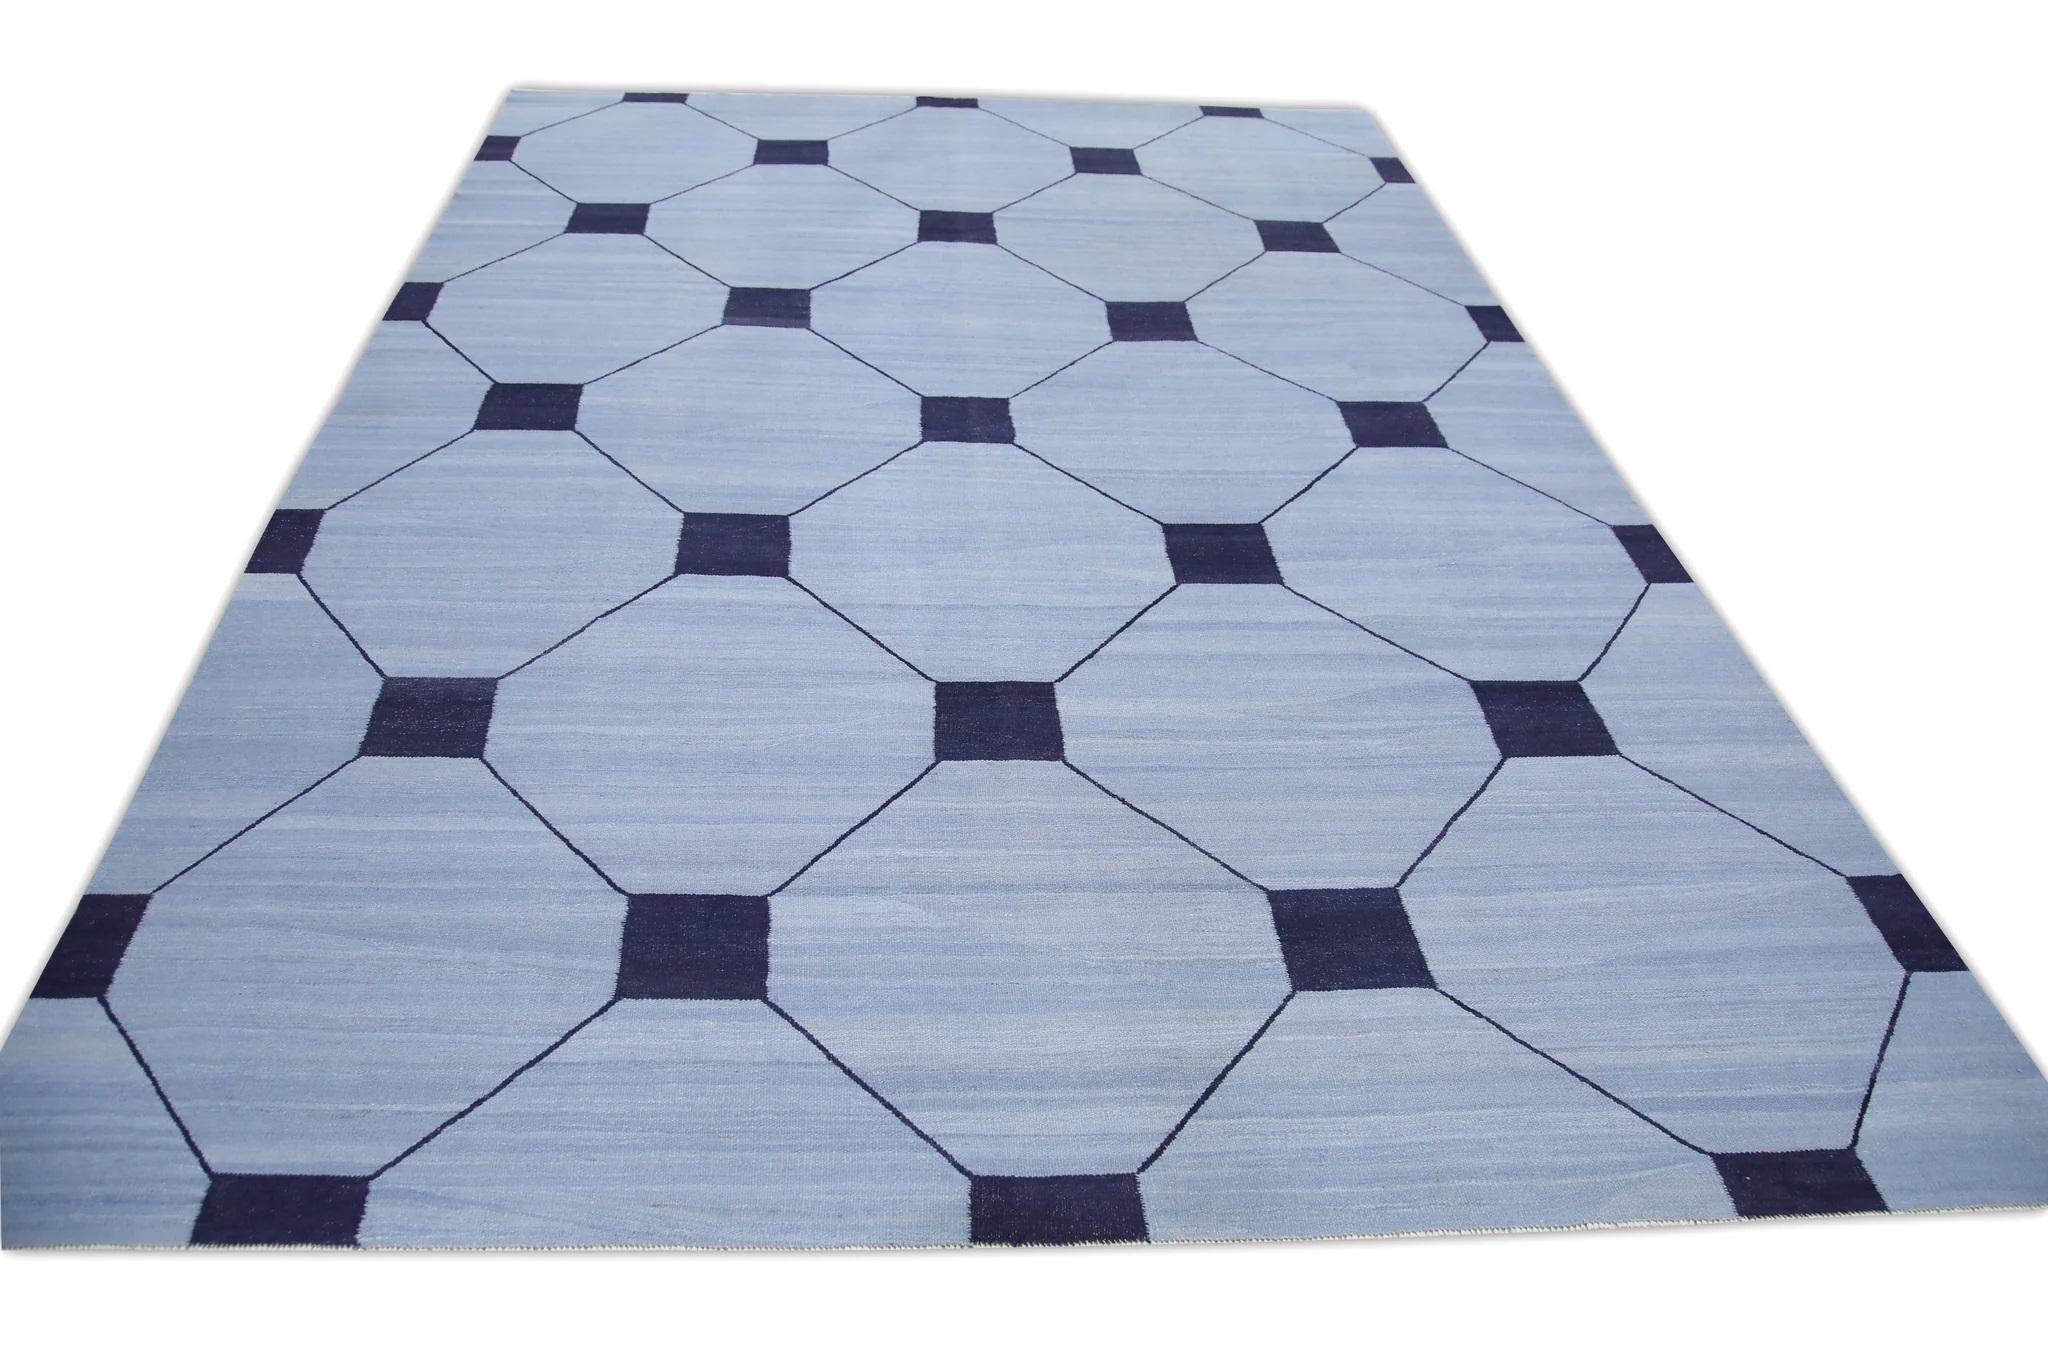 Blue Flatweave Handmade Wool Rug in Navy Geometric Design 9' x 12'7